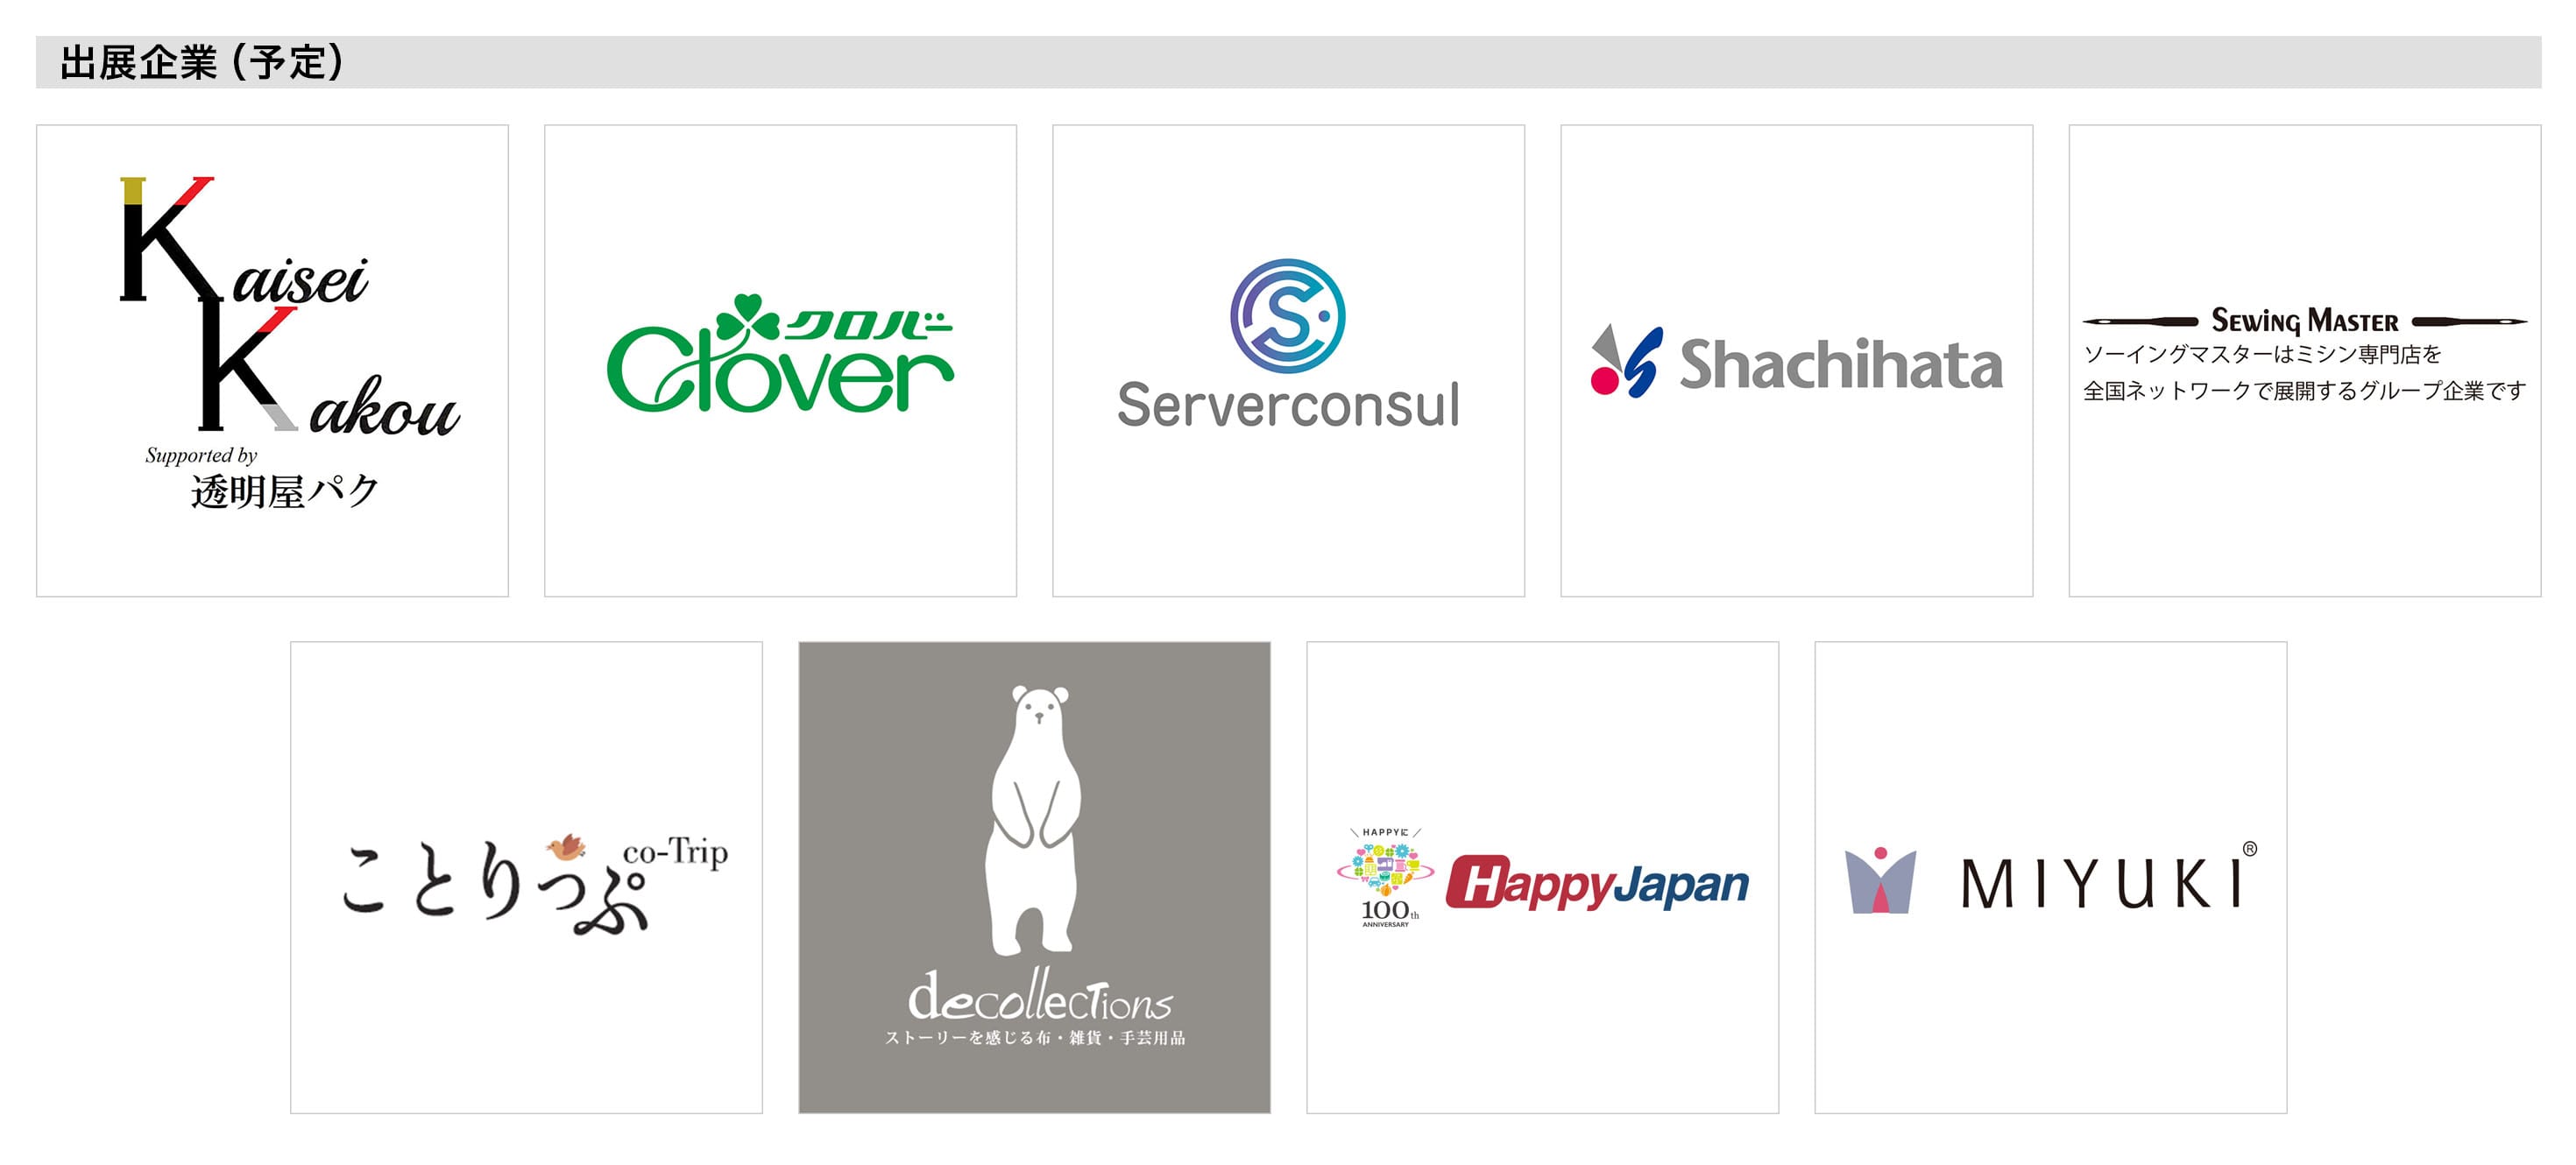 出展企業（予定）は以下に列挙する9社。Kaisei Kakou Supported by 透明屋パク、クローバー、Serverconsul、Shachihata、SEWING MASTER、ことりっぷ、decollecTions、Happy Japan、MIYUKI。